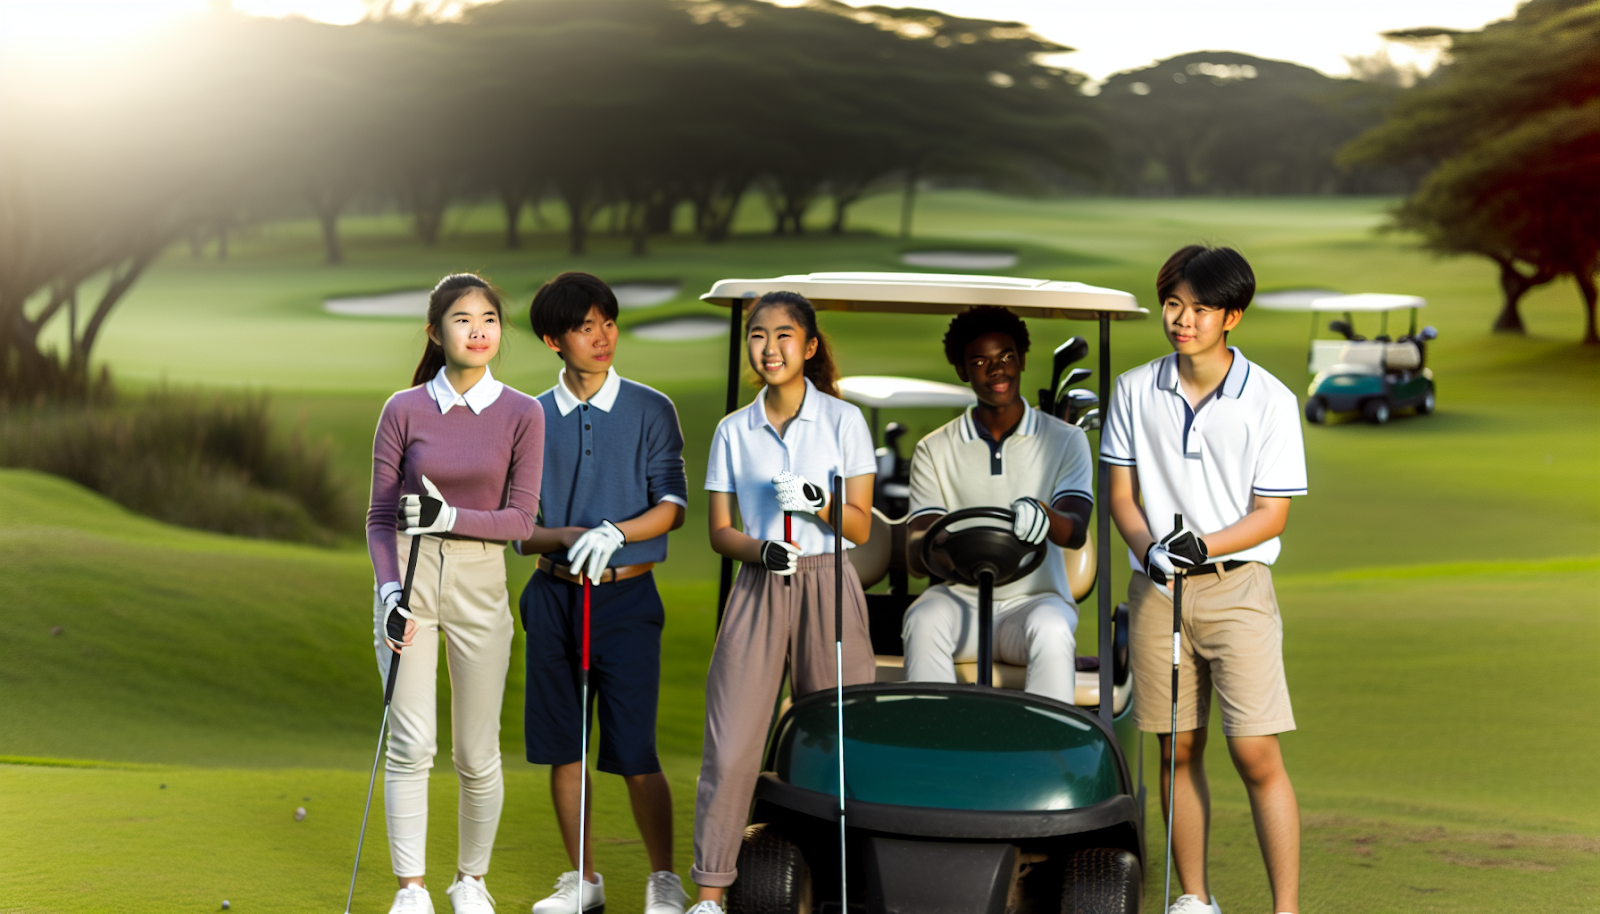 Un groupe d'adolescents conduisant une voiturette de golf sur un parcours